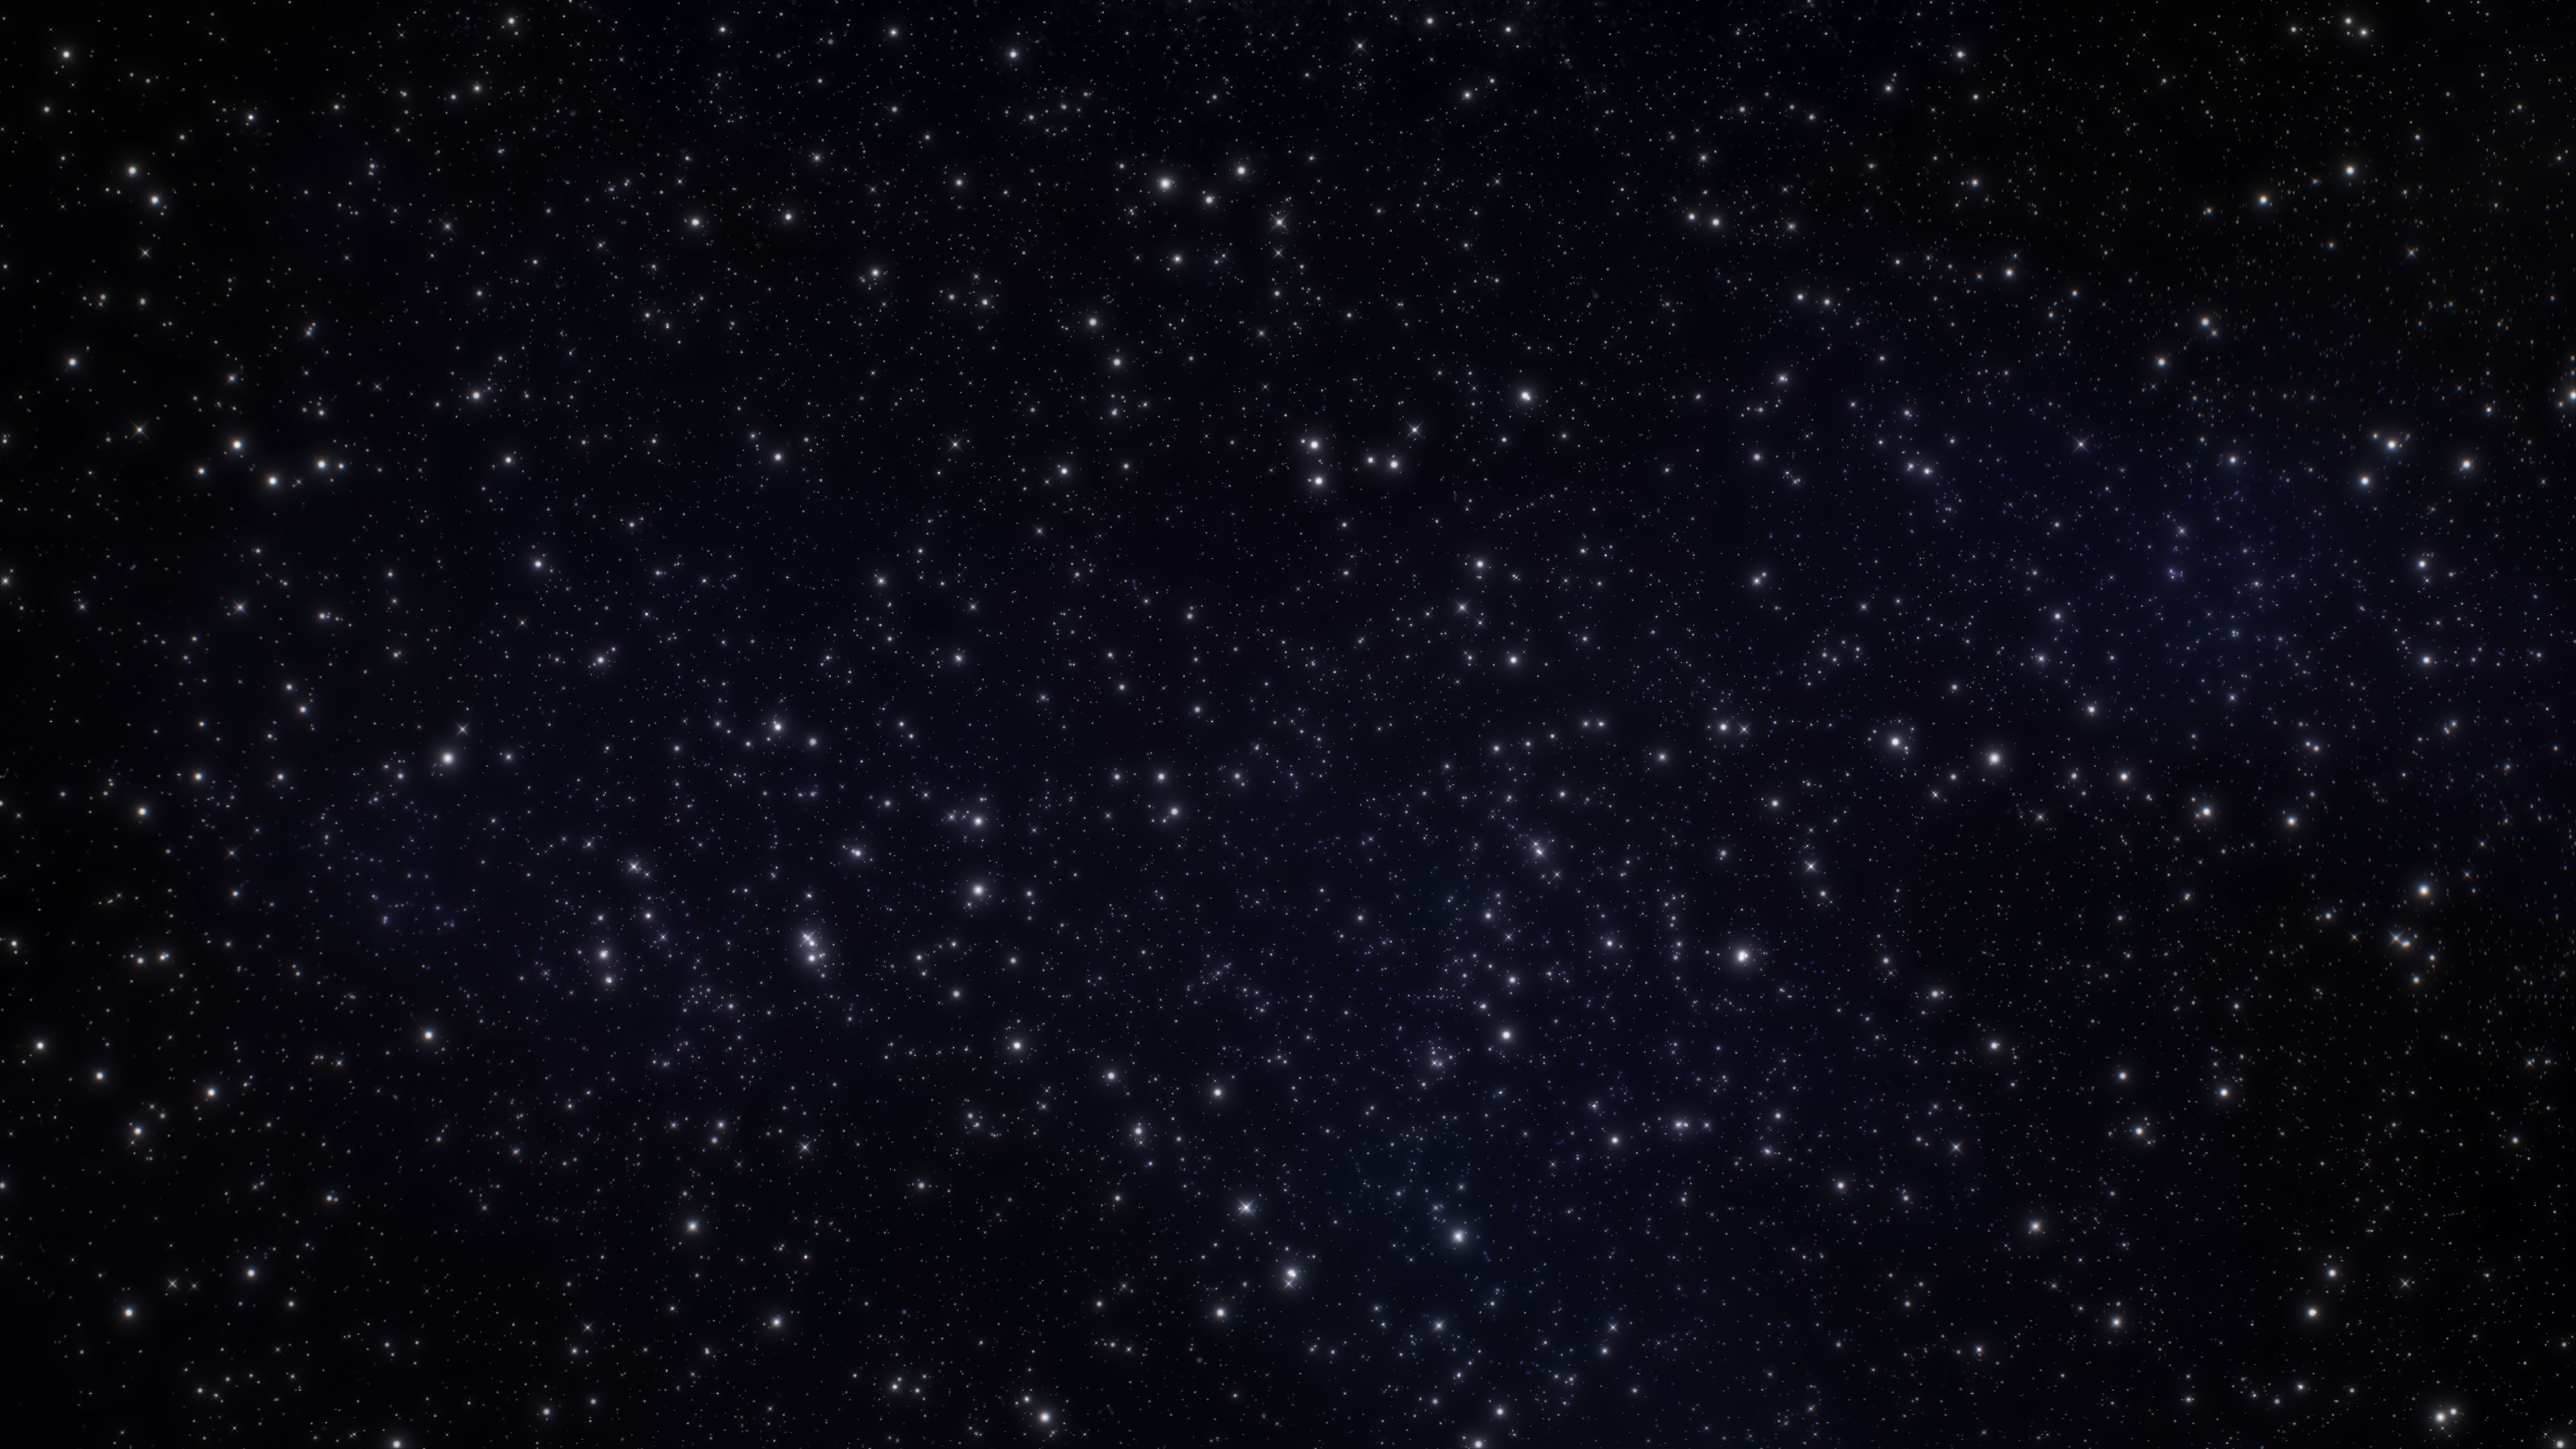 Không gian đêm tràn ngập với hàng ngàn vì sao phát sáng như một sự thật được tái hiện trong phông nền Sao của chúng tôi. Hãy tìm hiểu thêm về chòm sao huyền bí và khám phá những điều tuyệt vời của tiền vệ trời đêm.